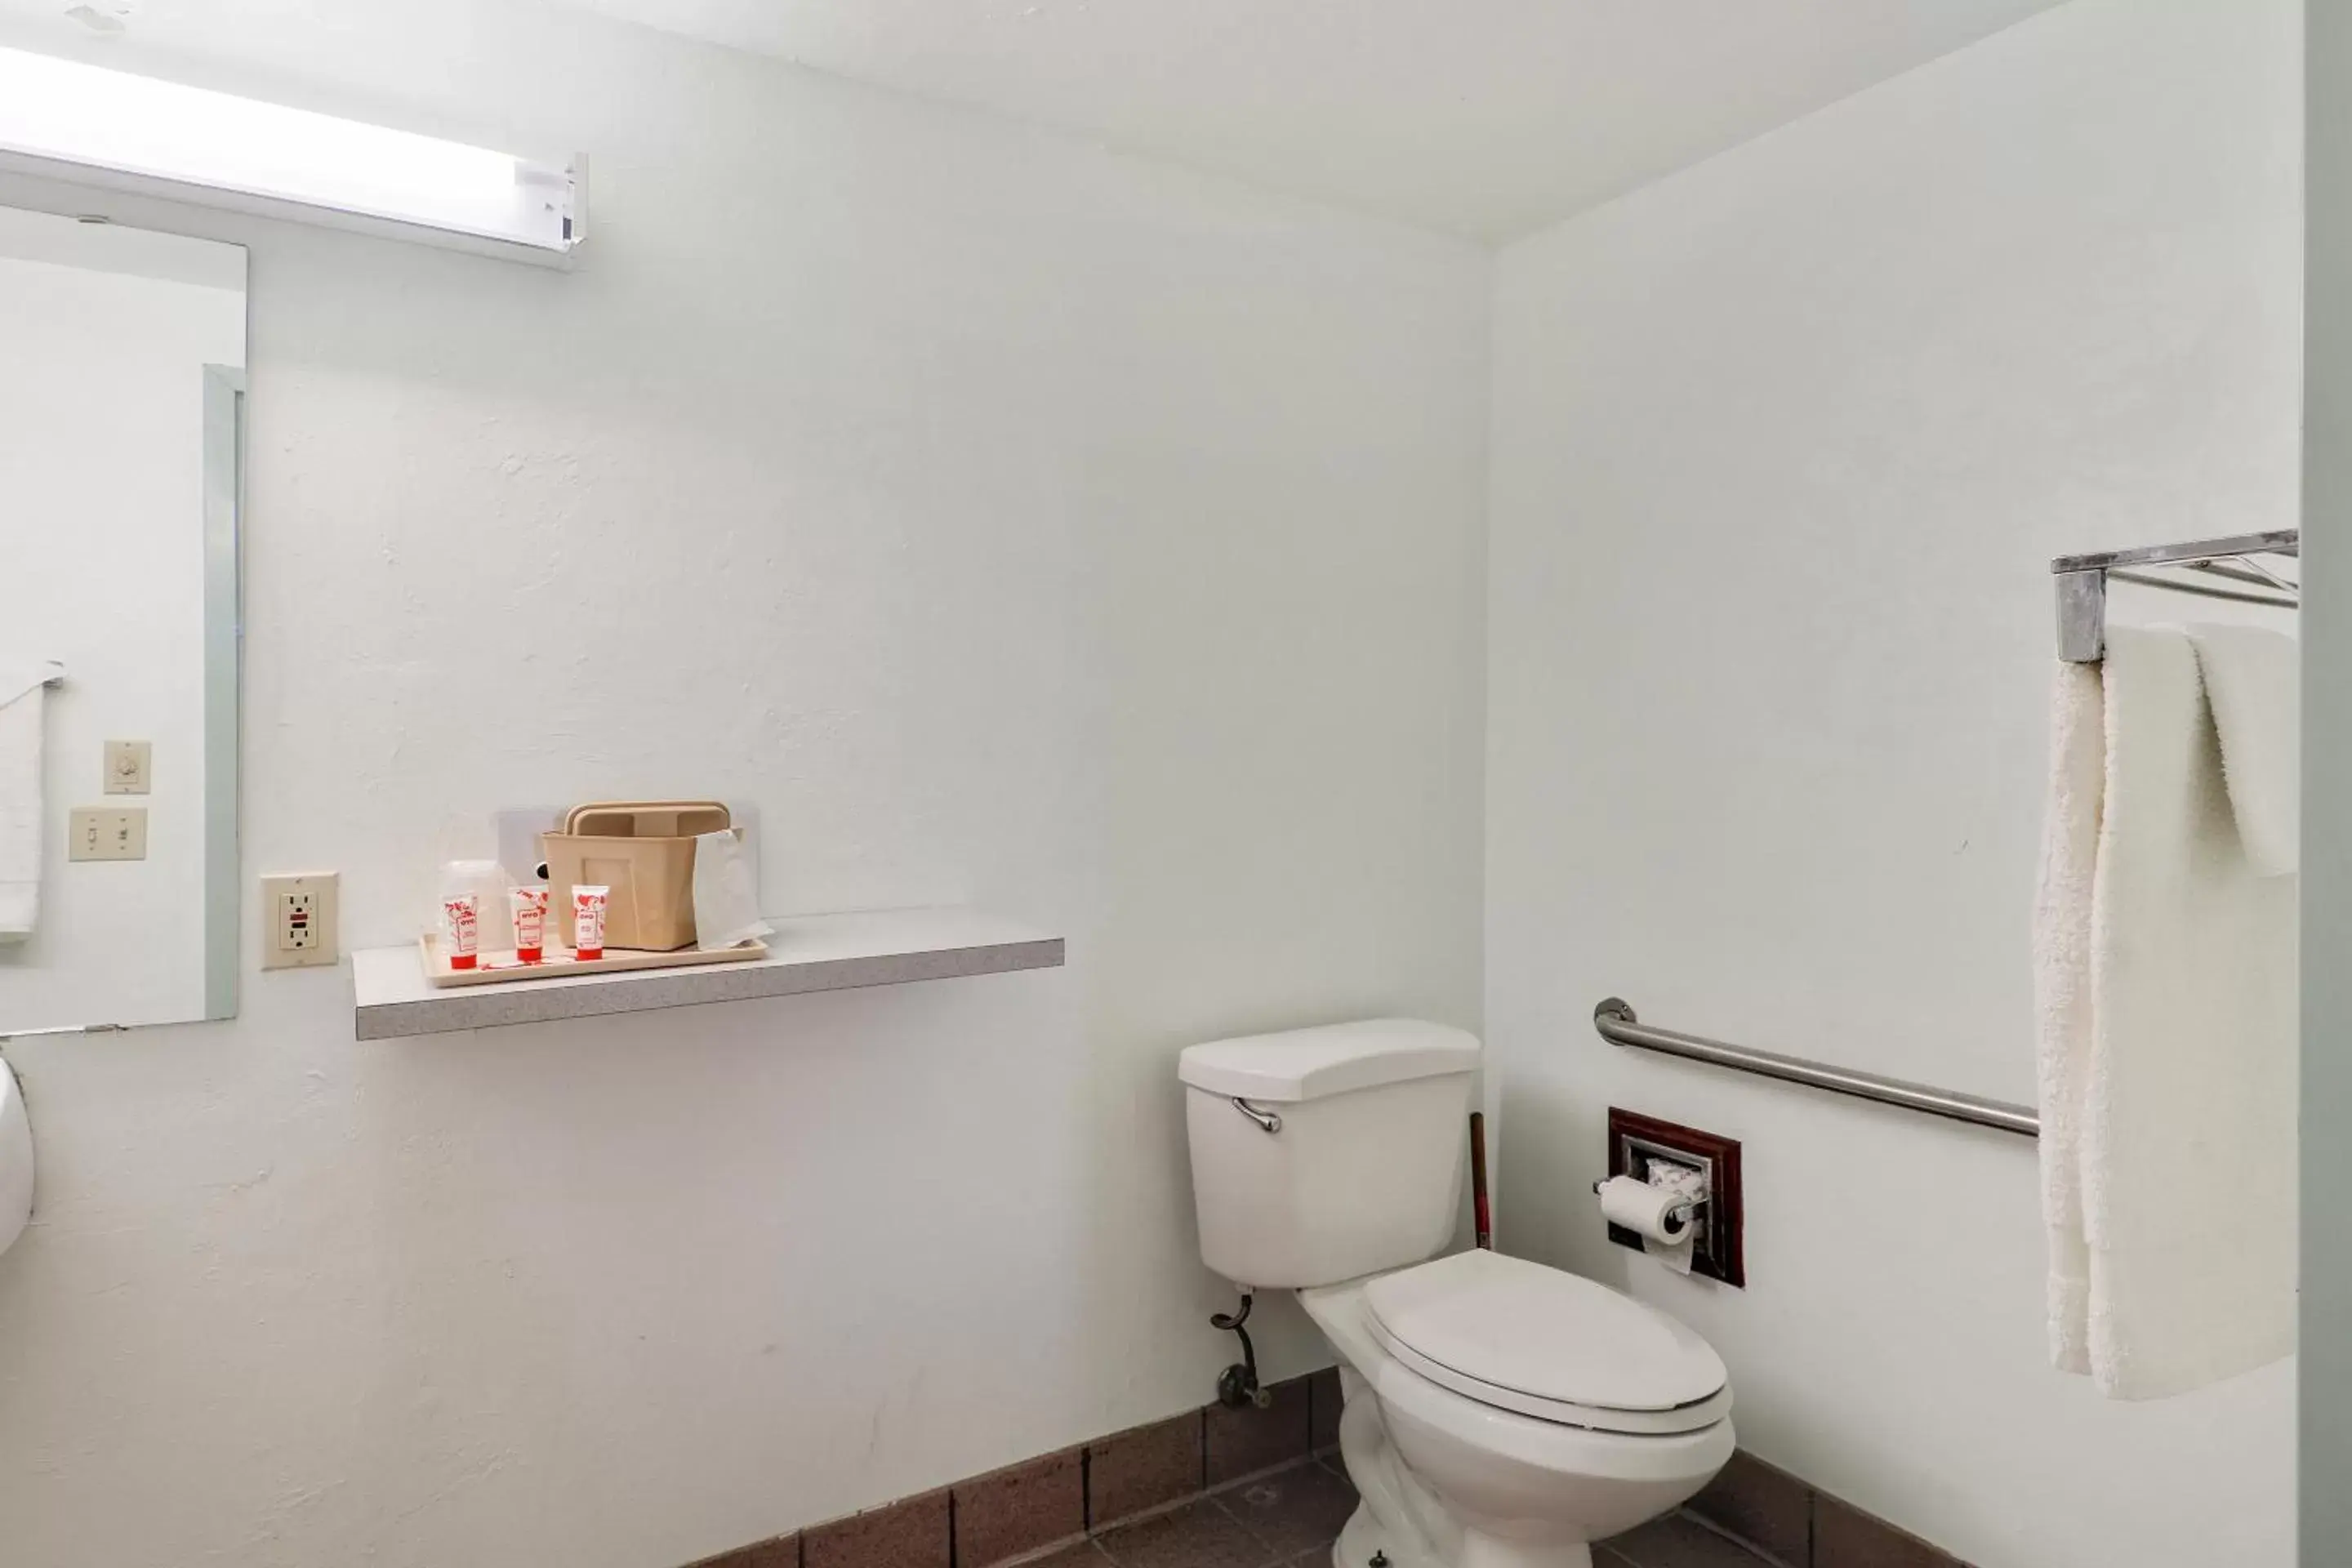 Bathroom in Lonestar Inn & Suites, Erick OK Hwy 40 BY OYO